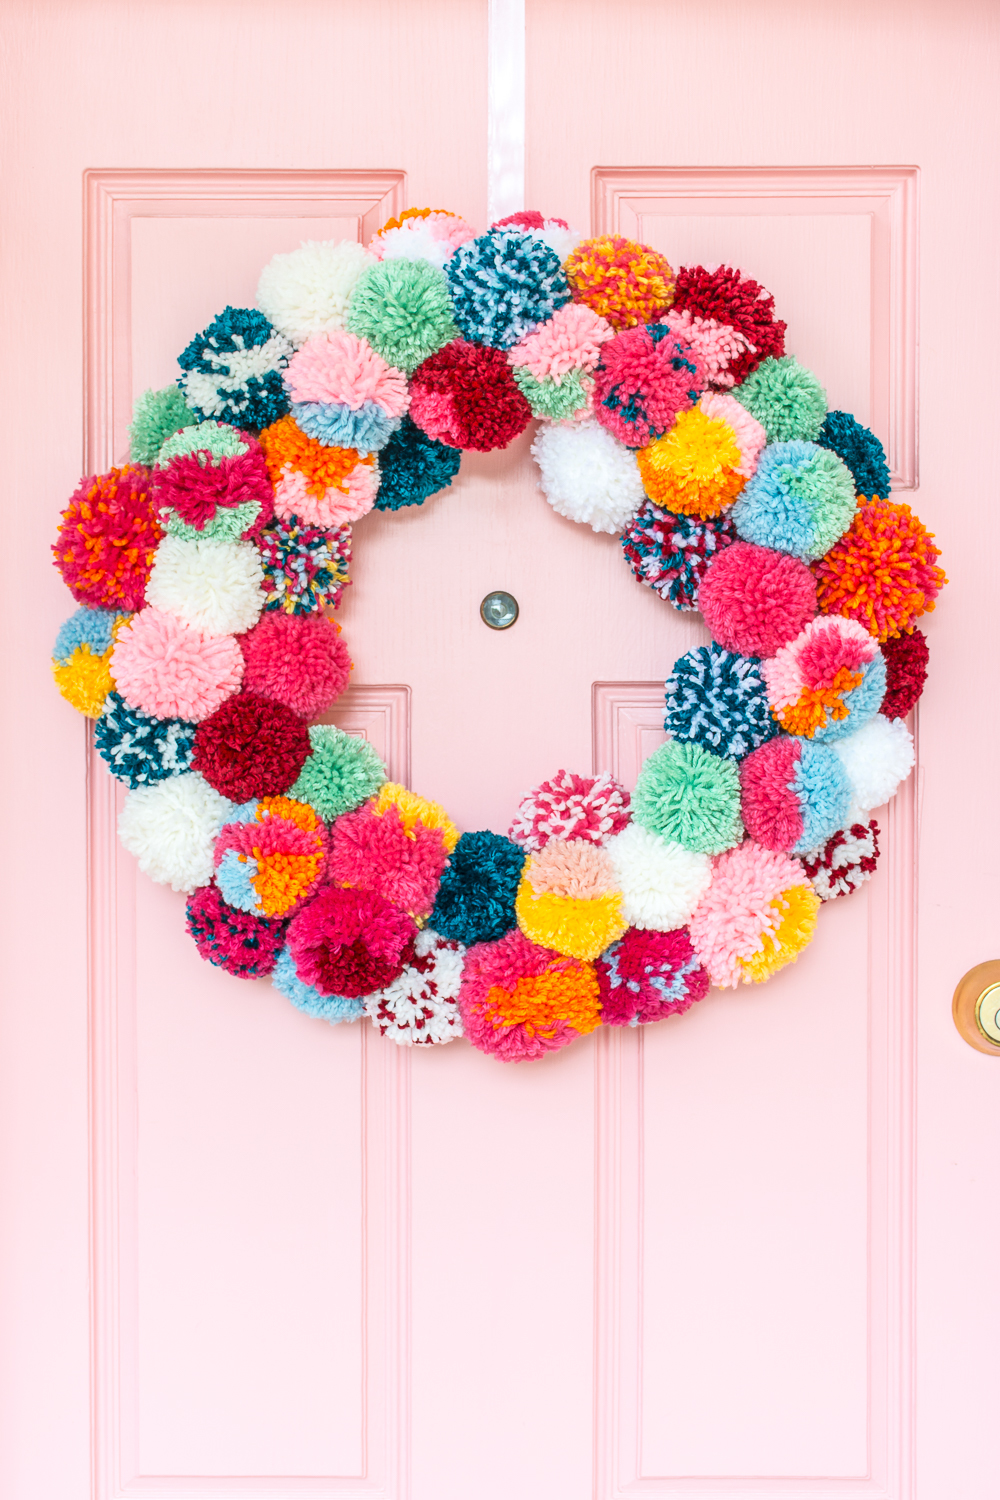 DIY Yarn Christmas Pom Pom Wreath - That Craft Site - fun and easy DIY  tutorials